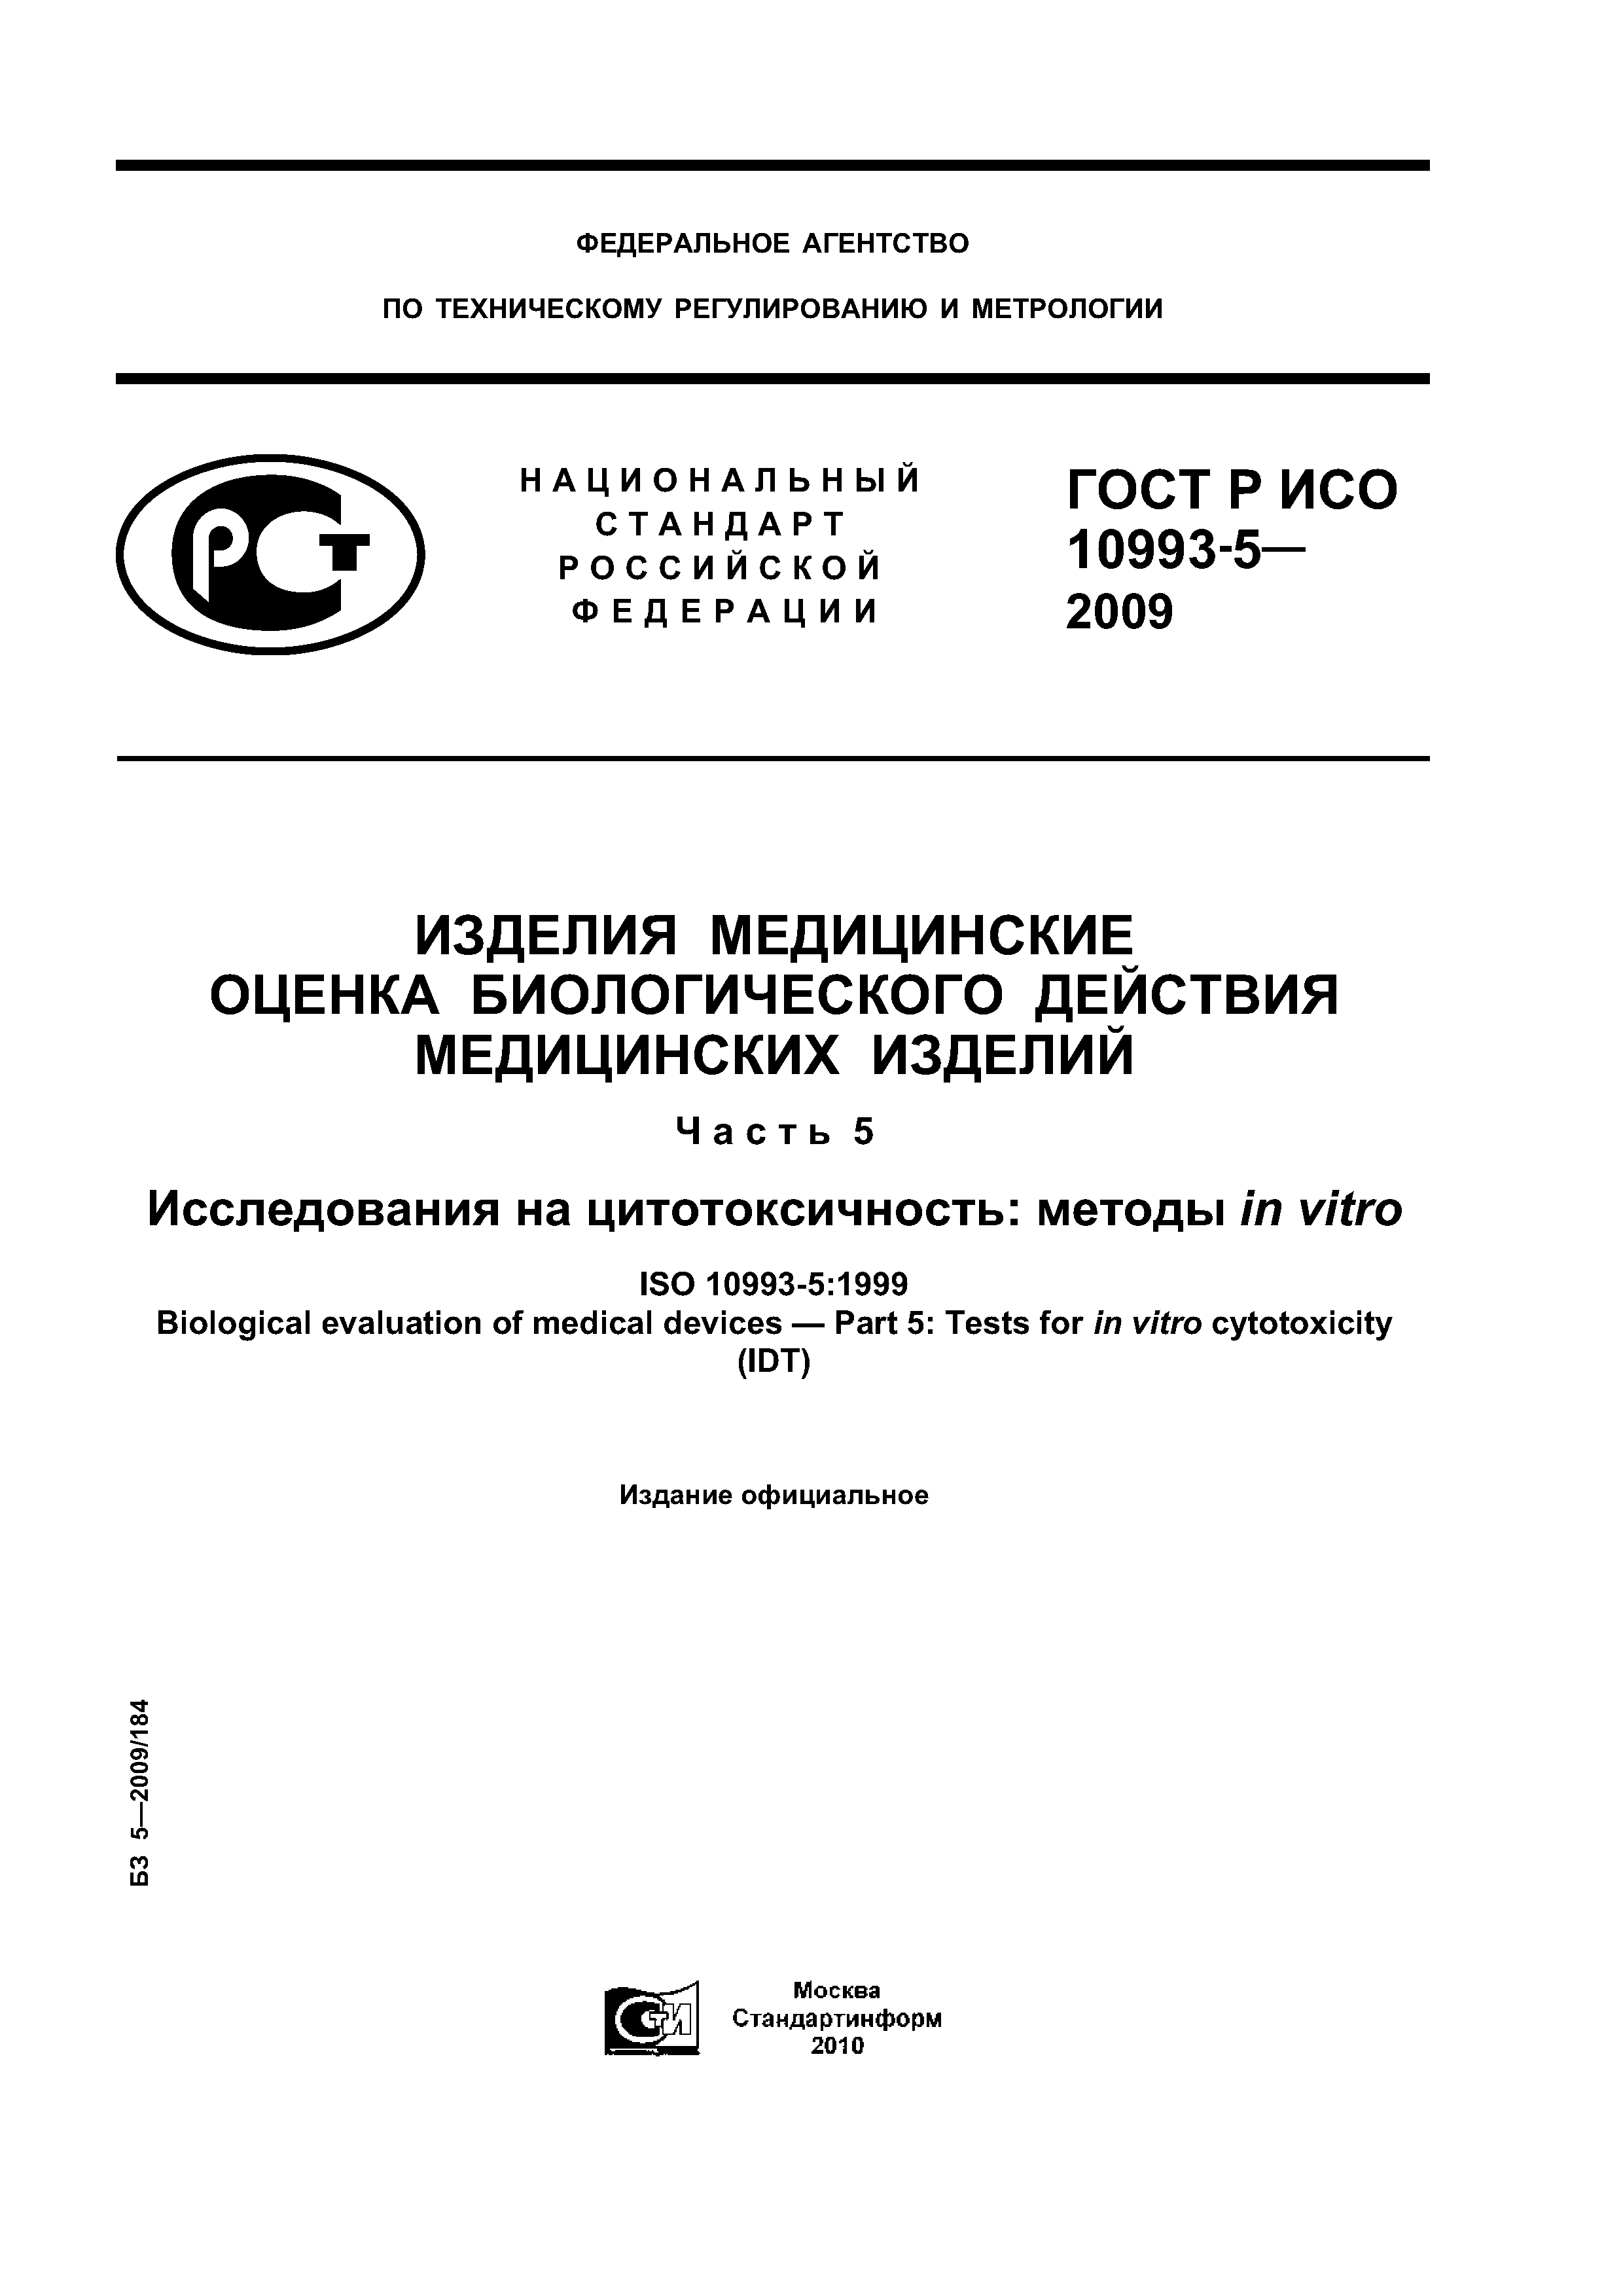 ГОСТ Р ИСО 10993-5-2009